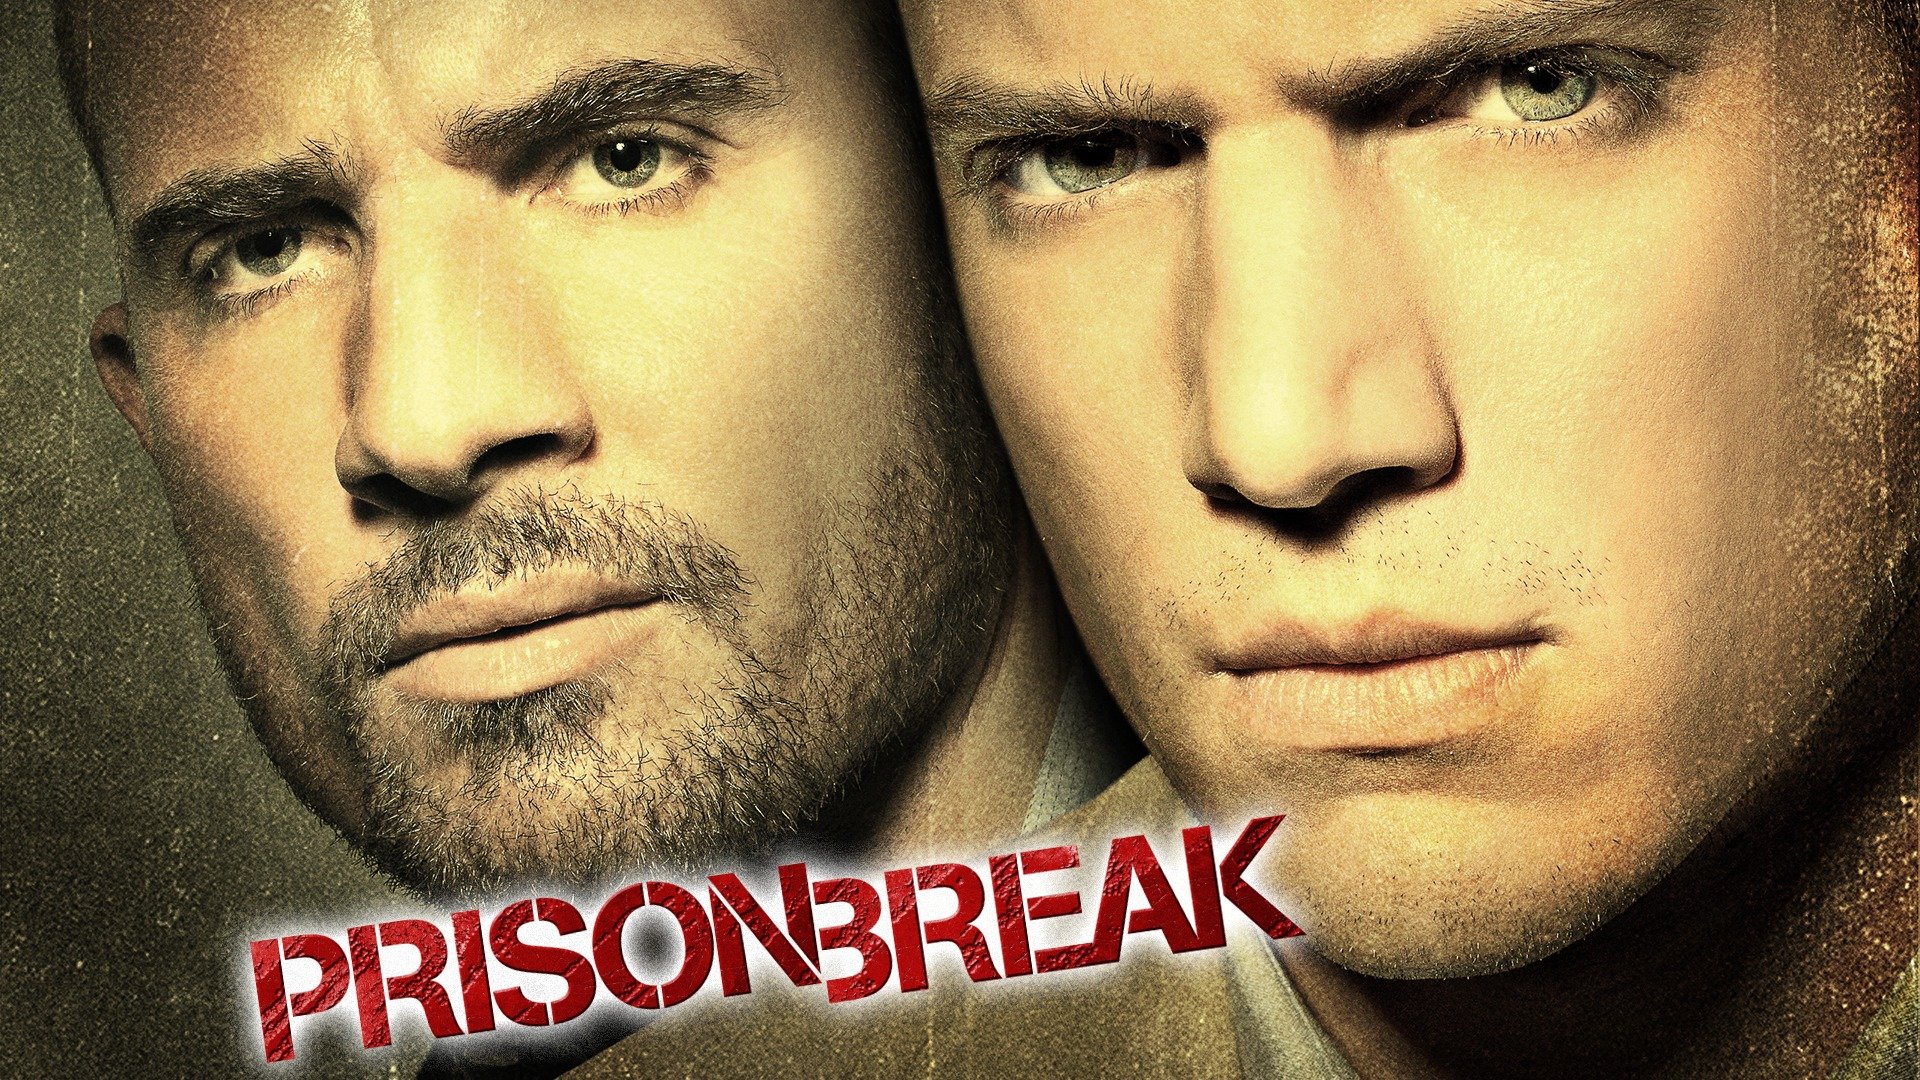 prison break season 1 episode 1 watch free